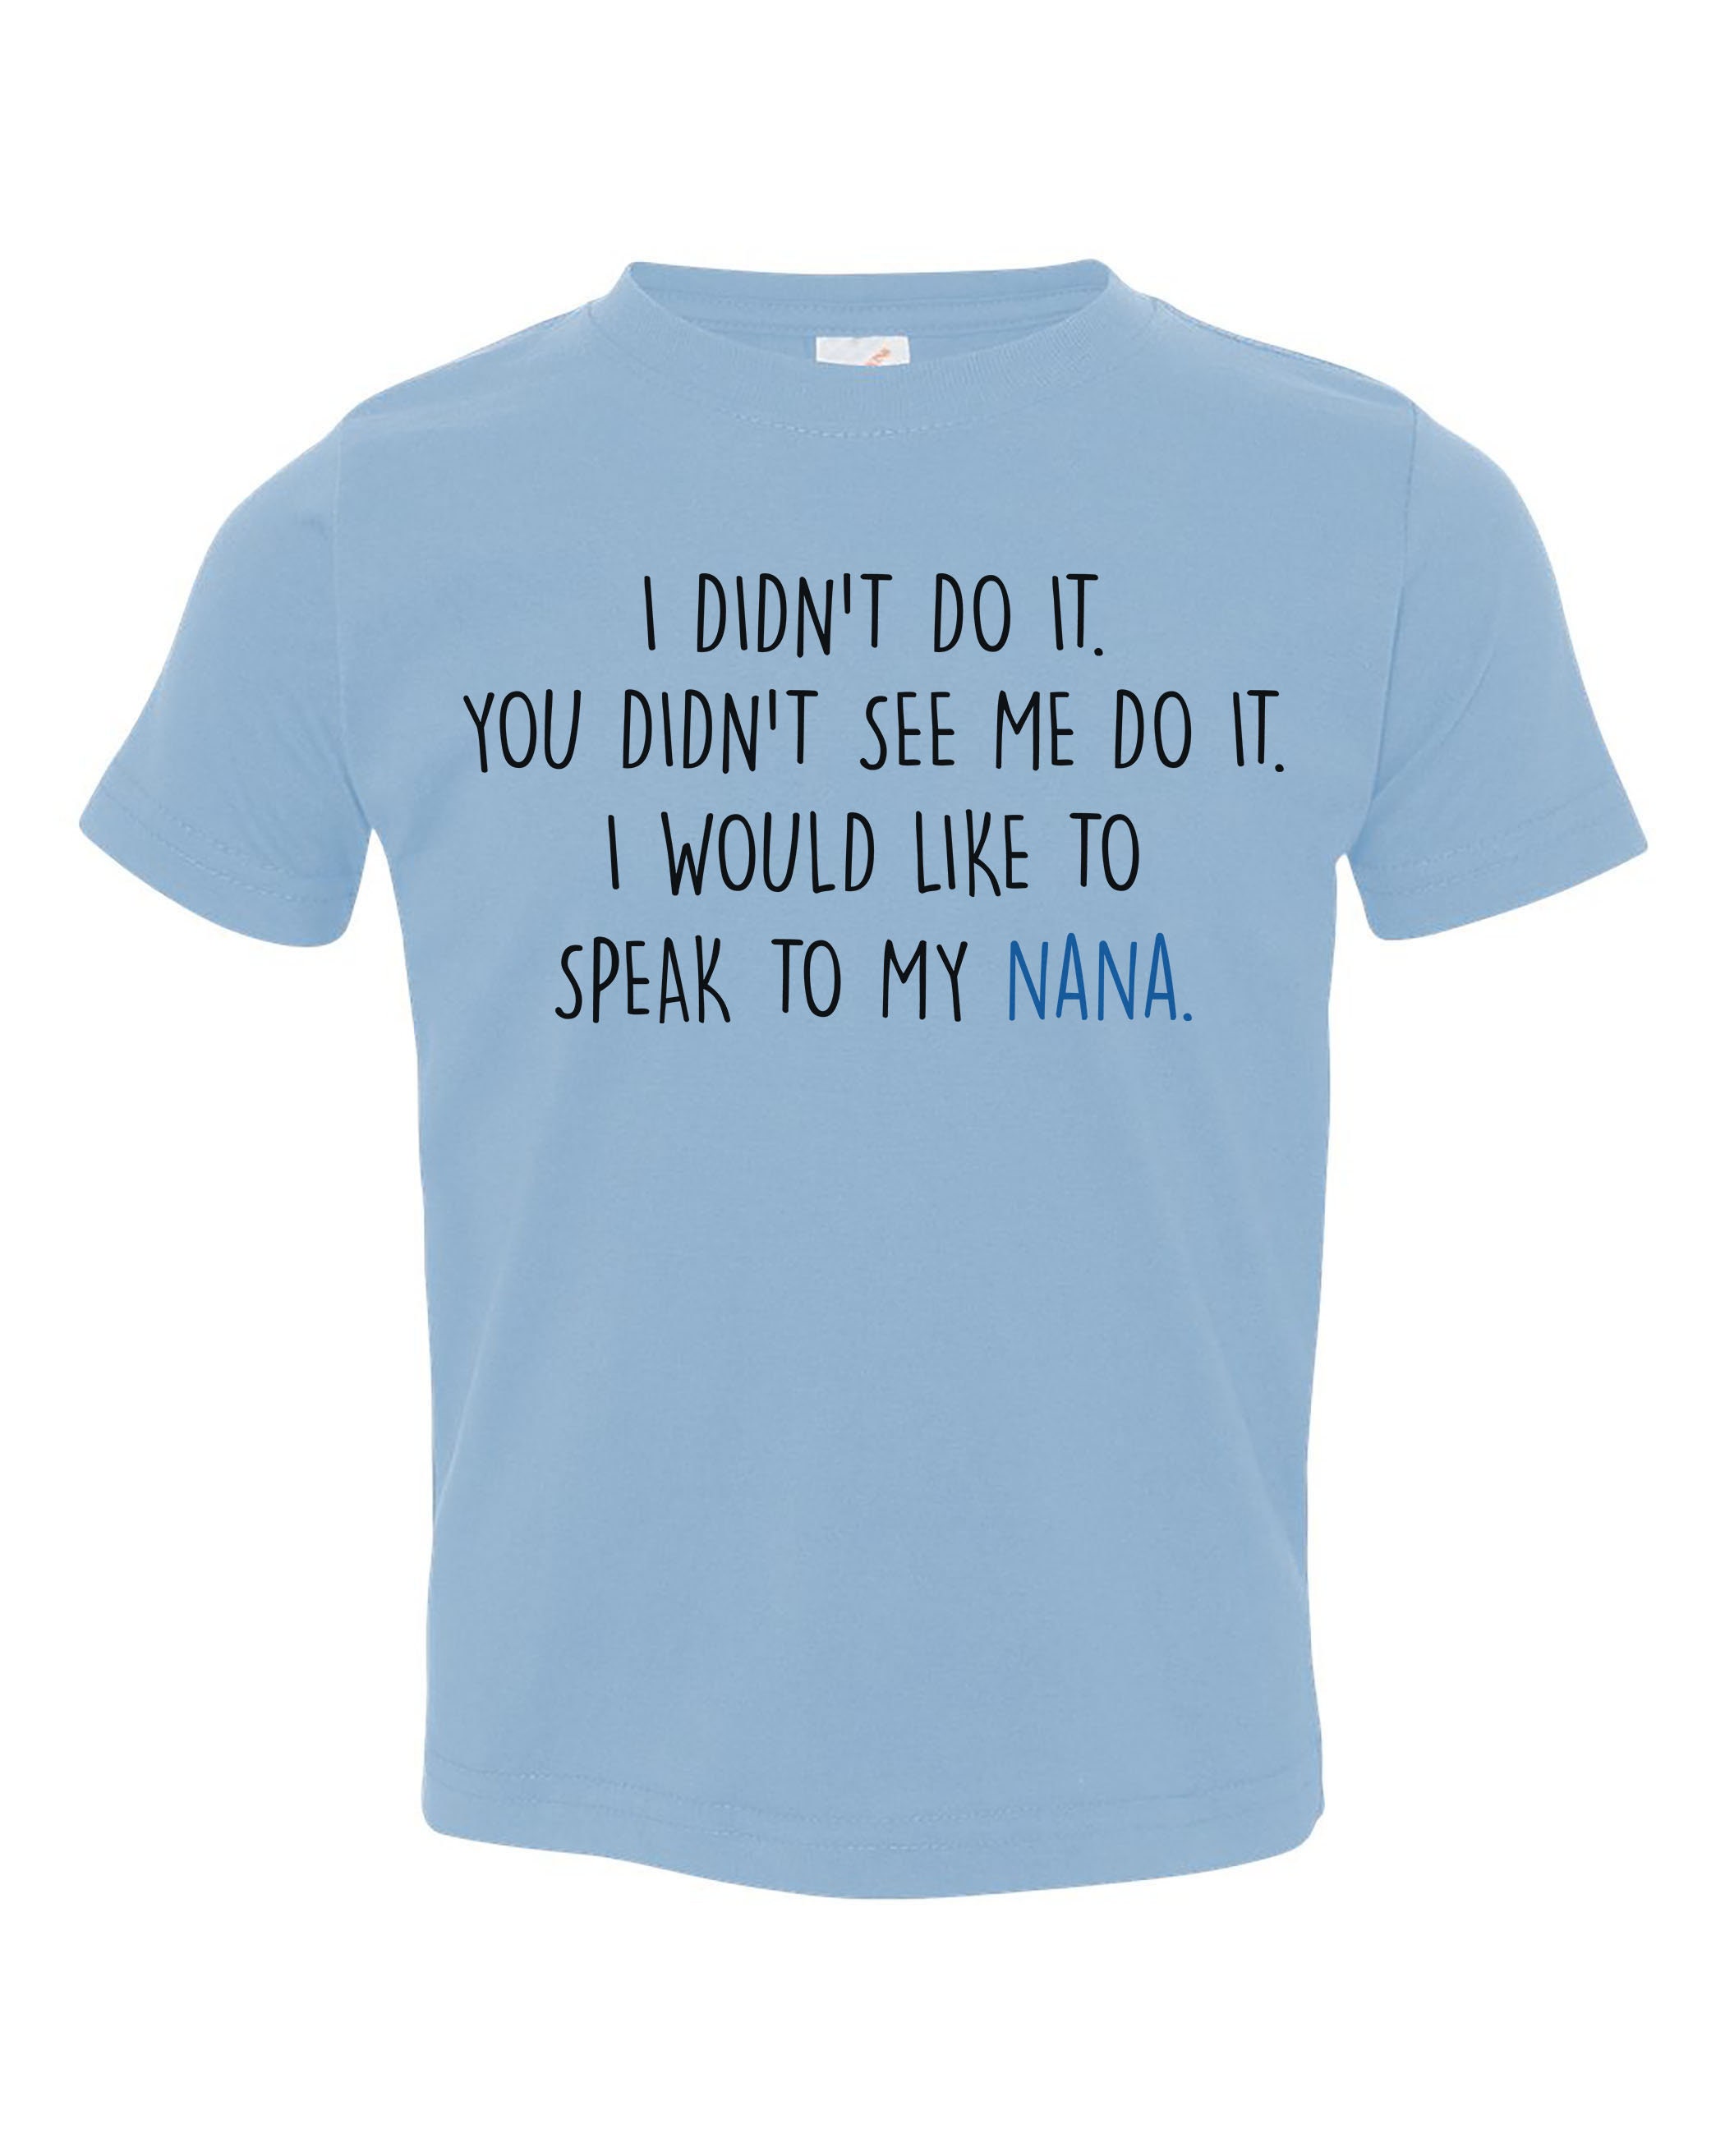 Funny Kids Shirt I DIDN'T Do It SPEAK To My NANA Toddler | Etsy